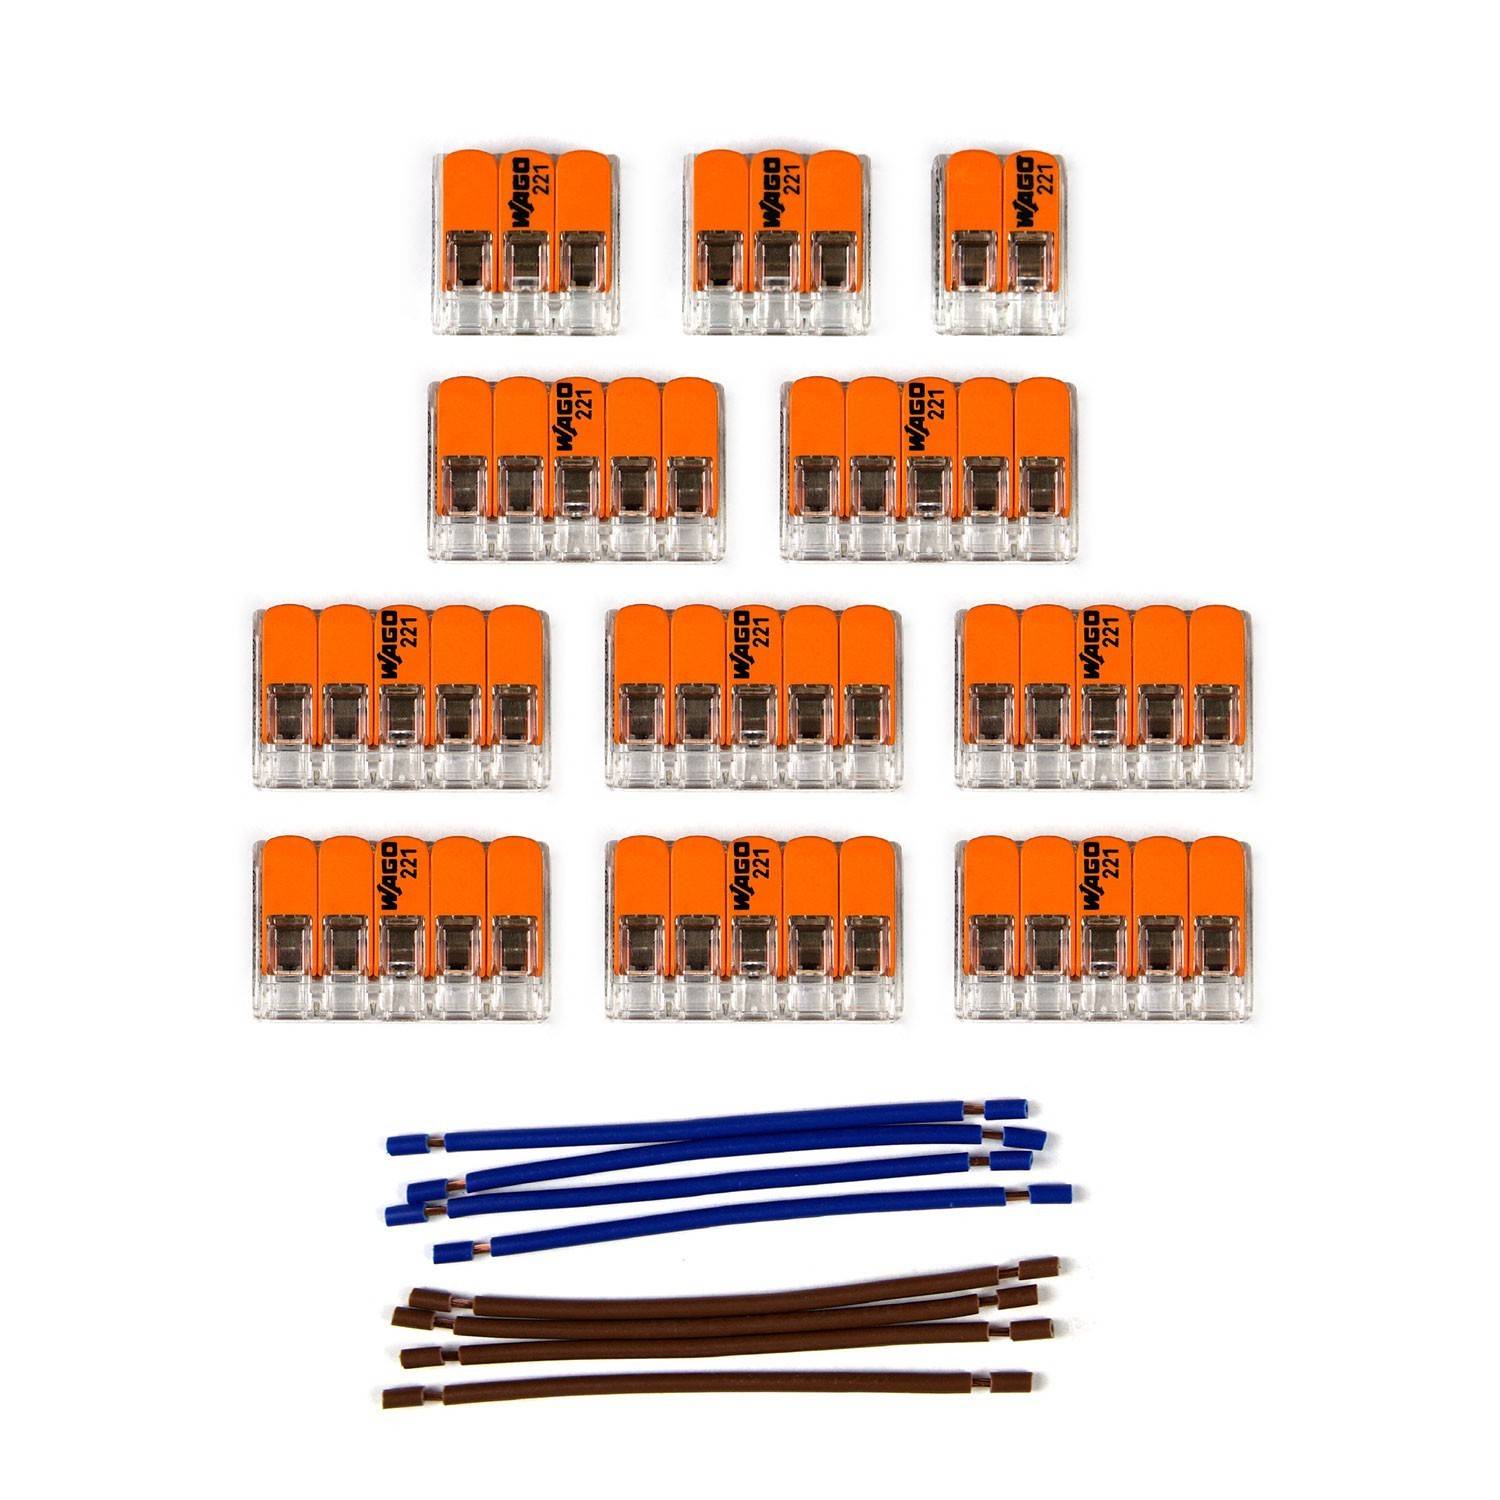 Kitul de conectori WAGO este compatibil cu cablul dublu pentru o rozetă de tavan cu 14 orificii.